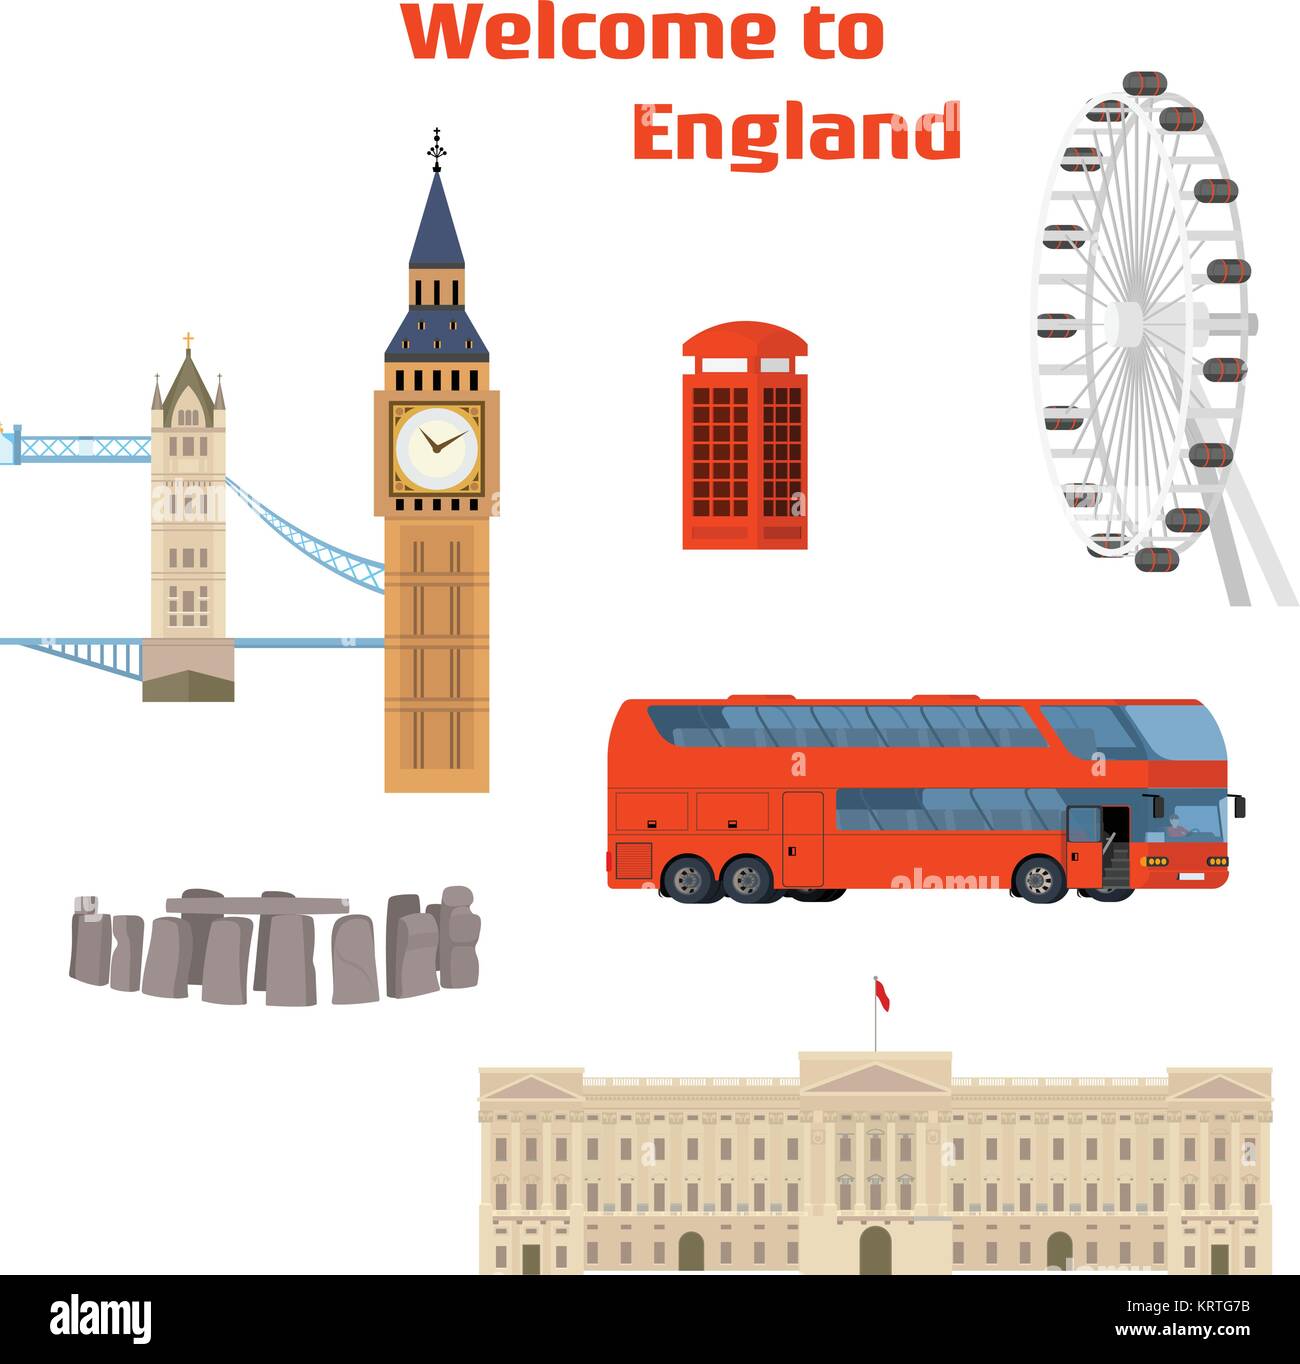 Bienvenido a Inglaterra - set de vectores de la London lugar famoso y emblemático con el Tower Bridge, el Big Ben, el London Eye, la cabina de teléfono rojo, rojo doble decker bus Ilustración del Vector